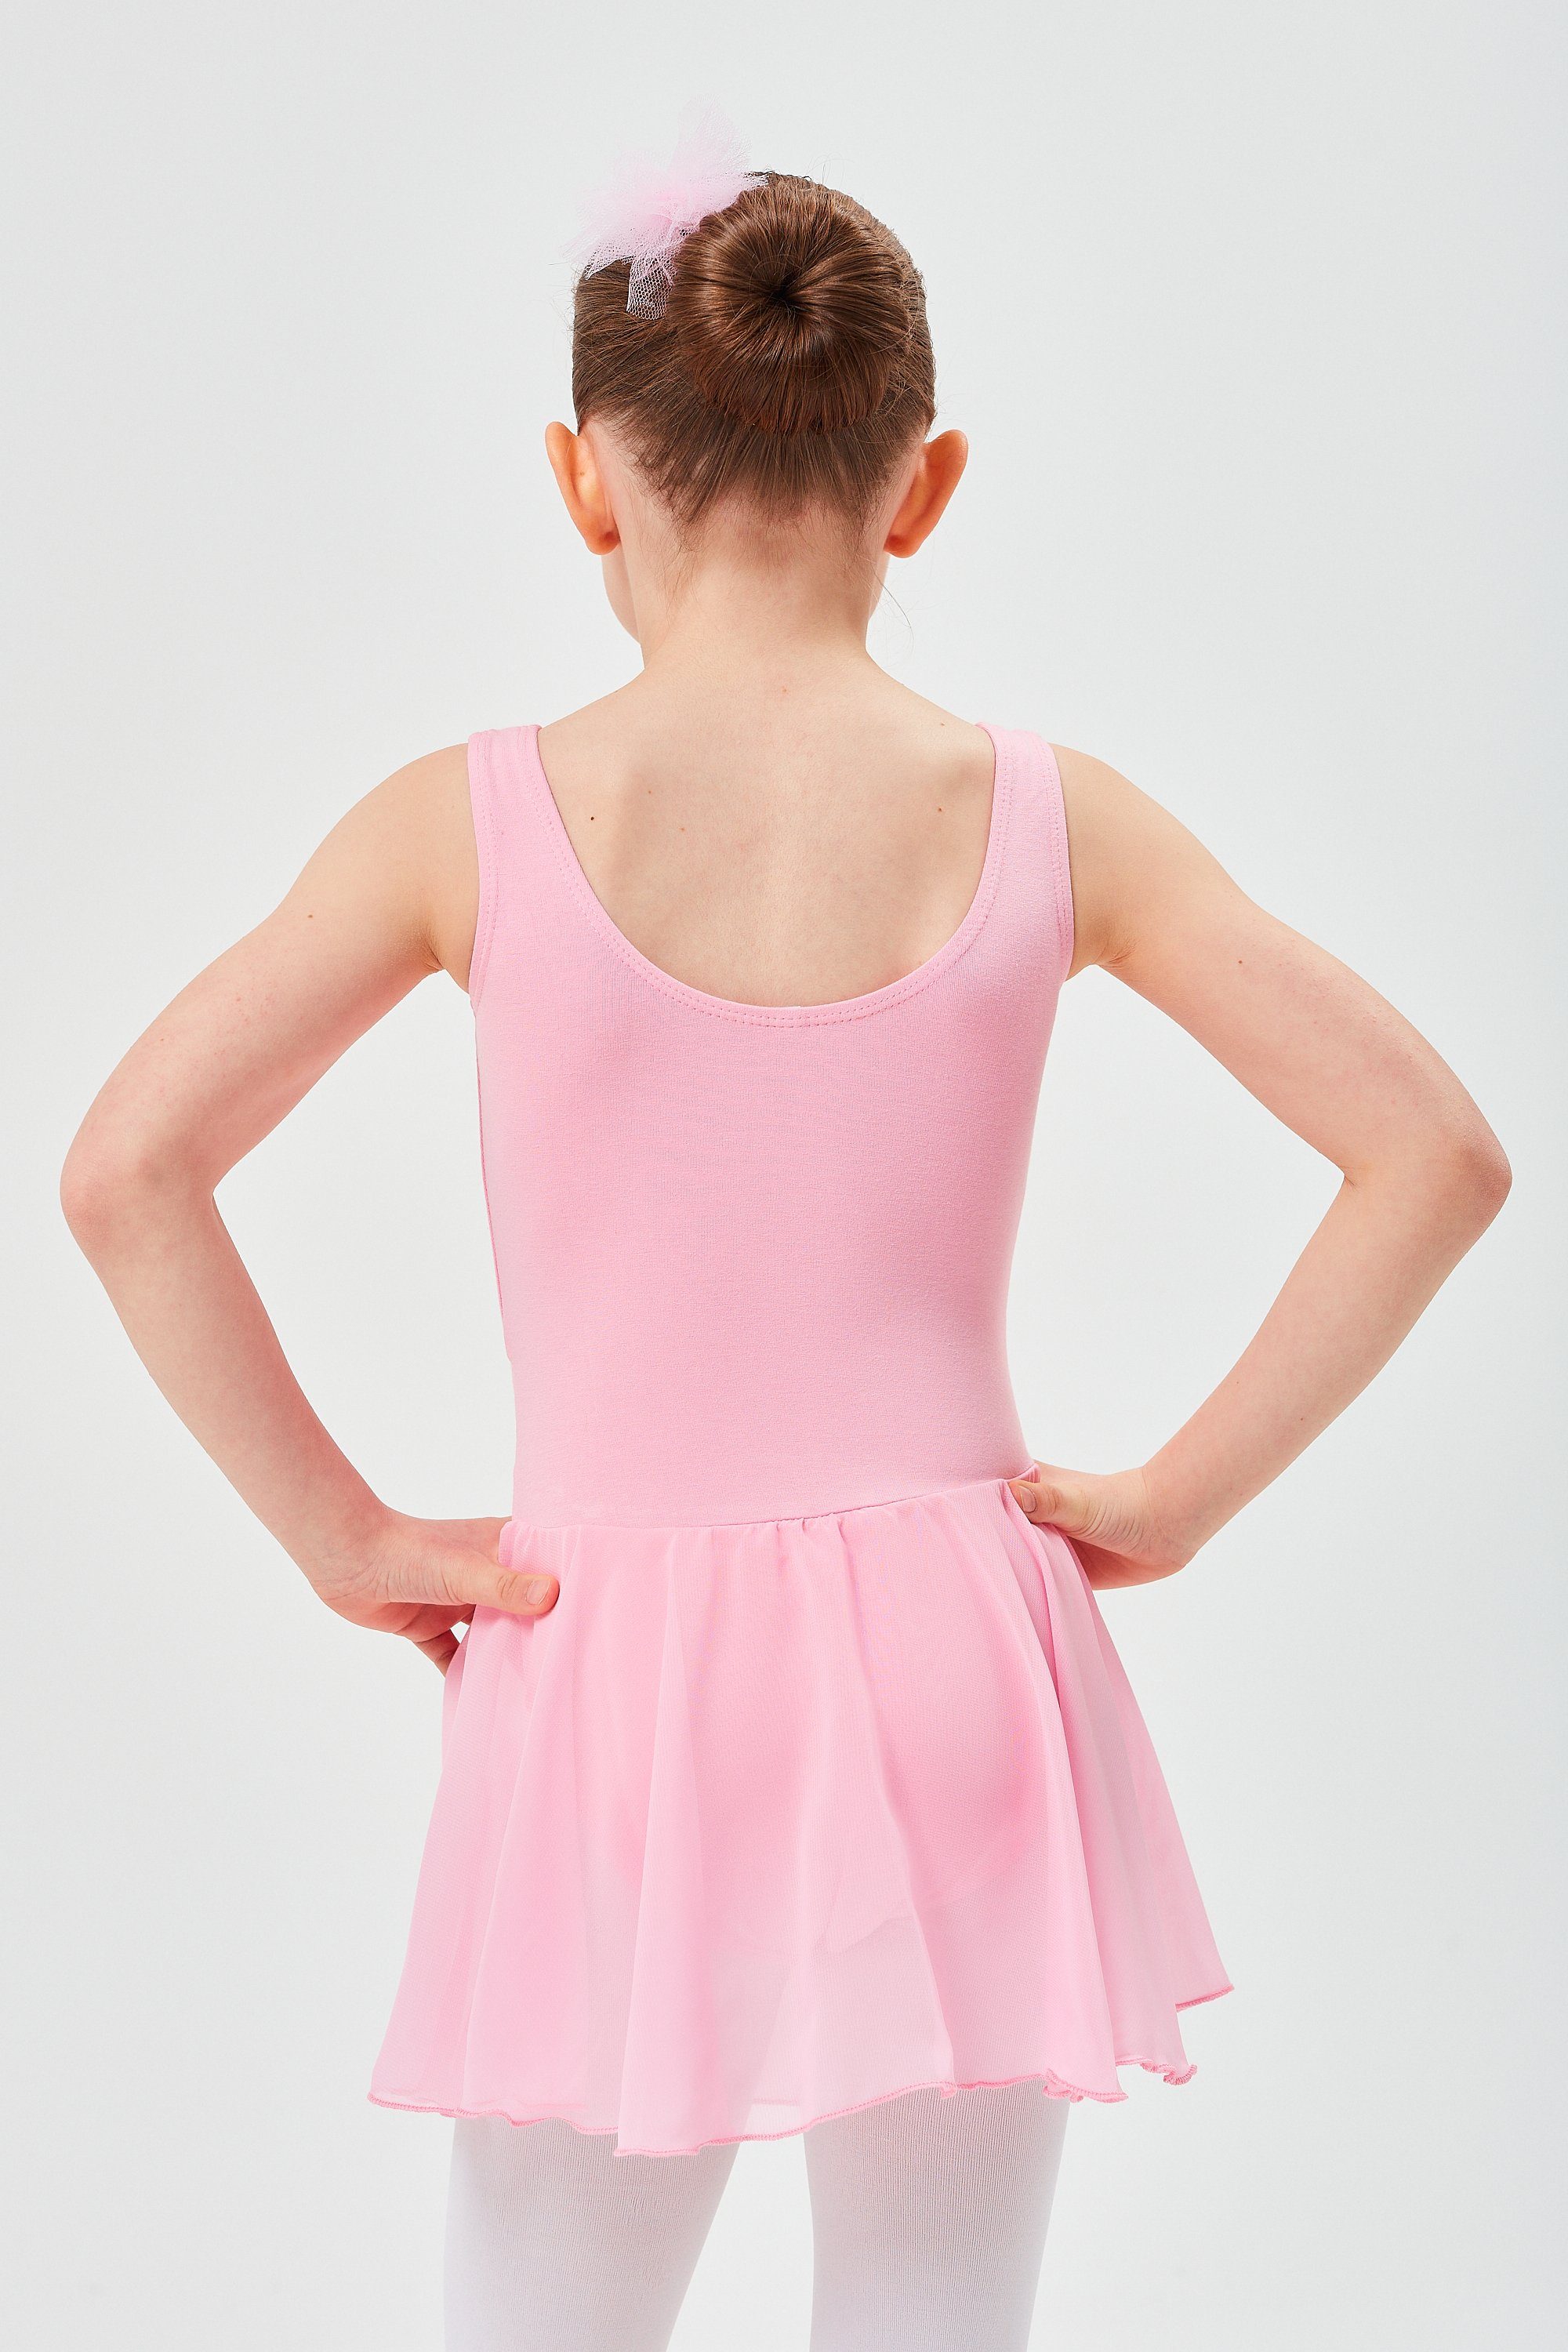 tanzmuster Chiffonkleid Ballett mit weichem Röckchen wunderbar Mädchen Trikot Minnie Baumwollmaterial aus für rosa Ballettkleid Chiffon